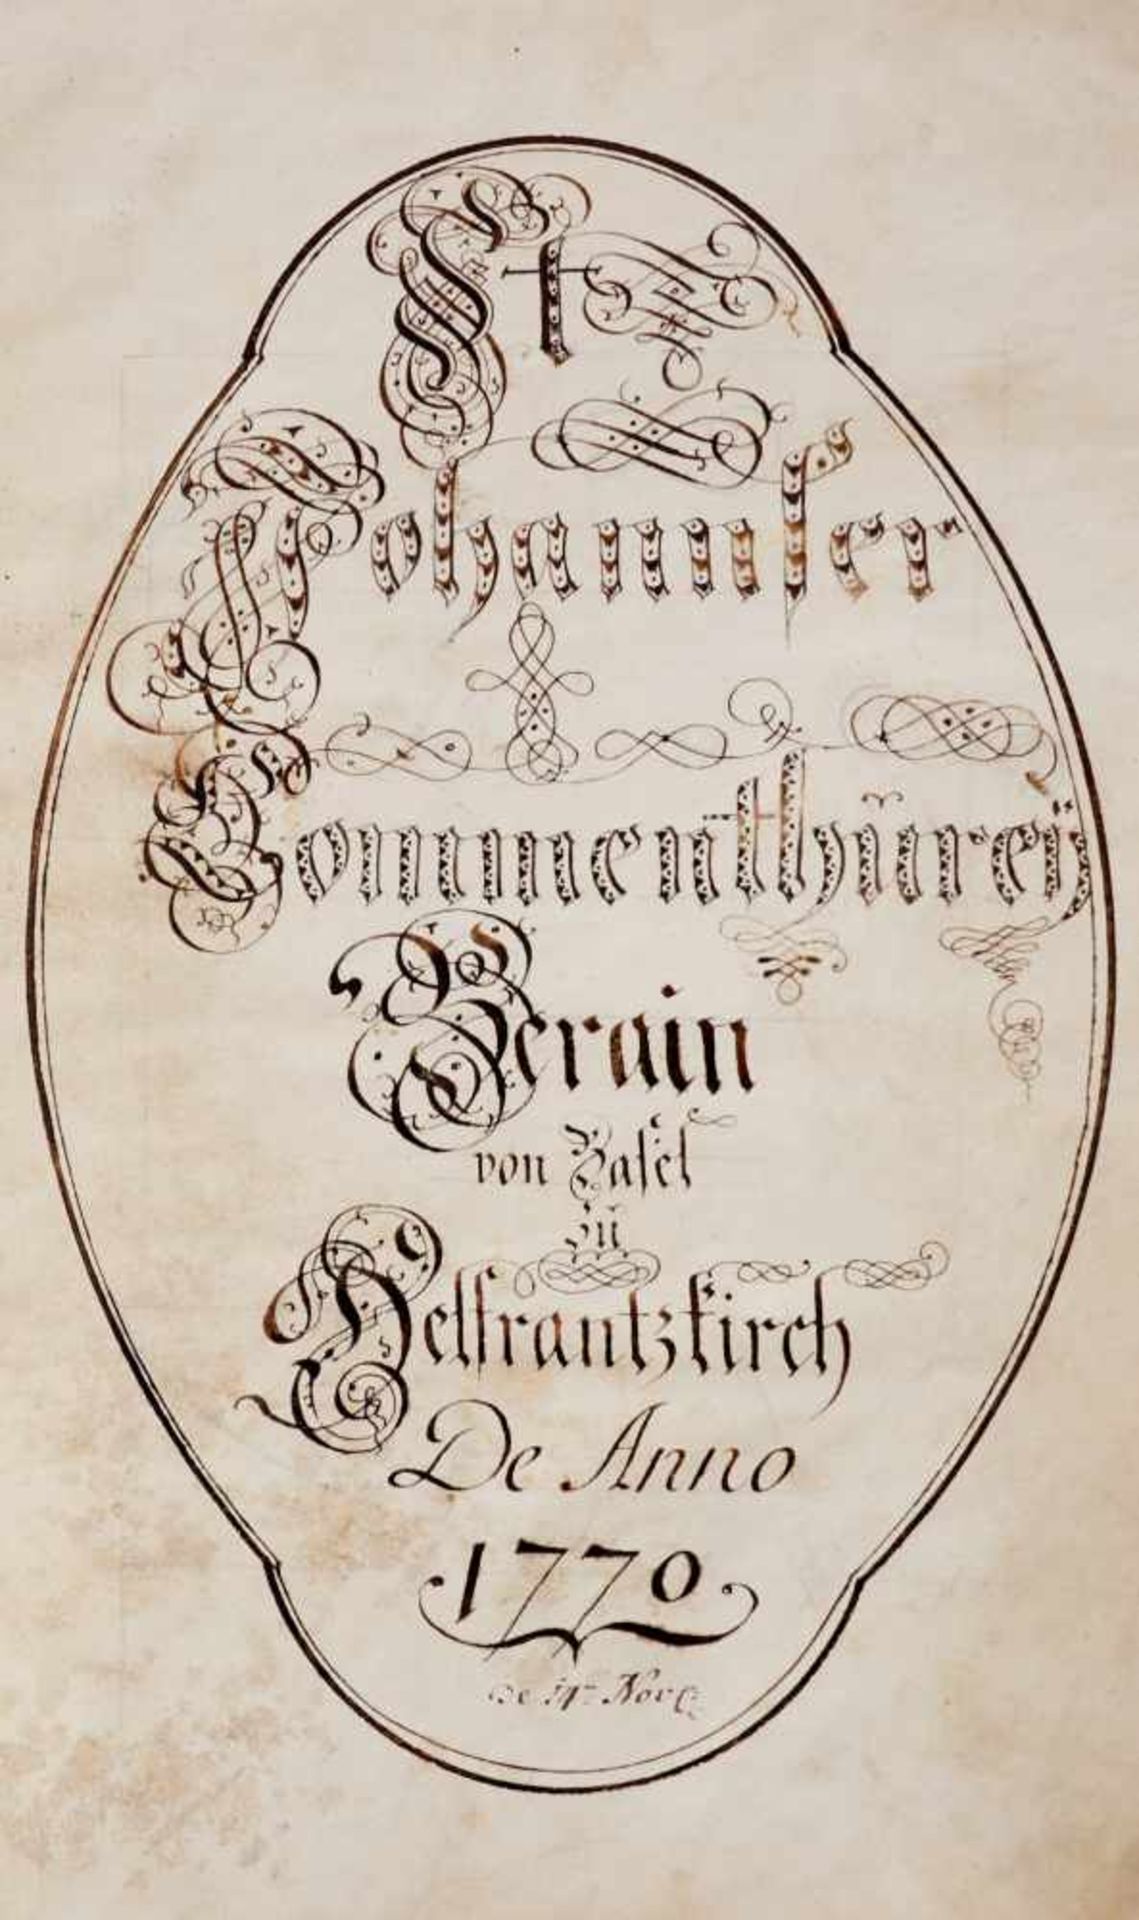 "St. Johannser Commenthurey Terain von Basel zu Helfrantzkirch De Anno 1770".Deutsche Handschrift - Bild 5 aus 6